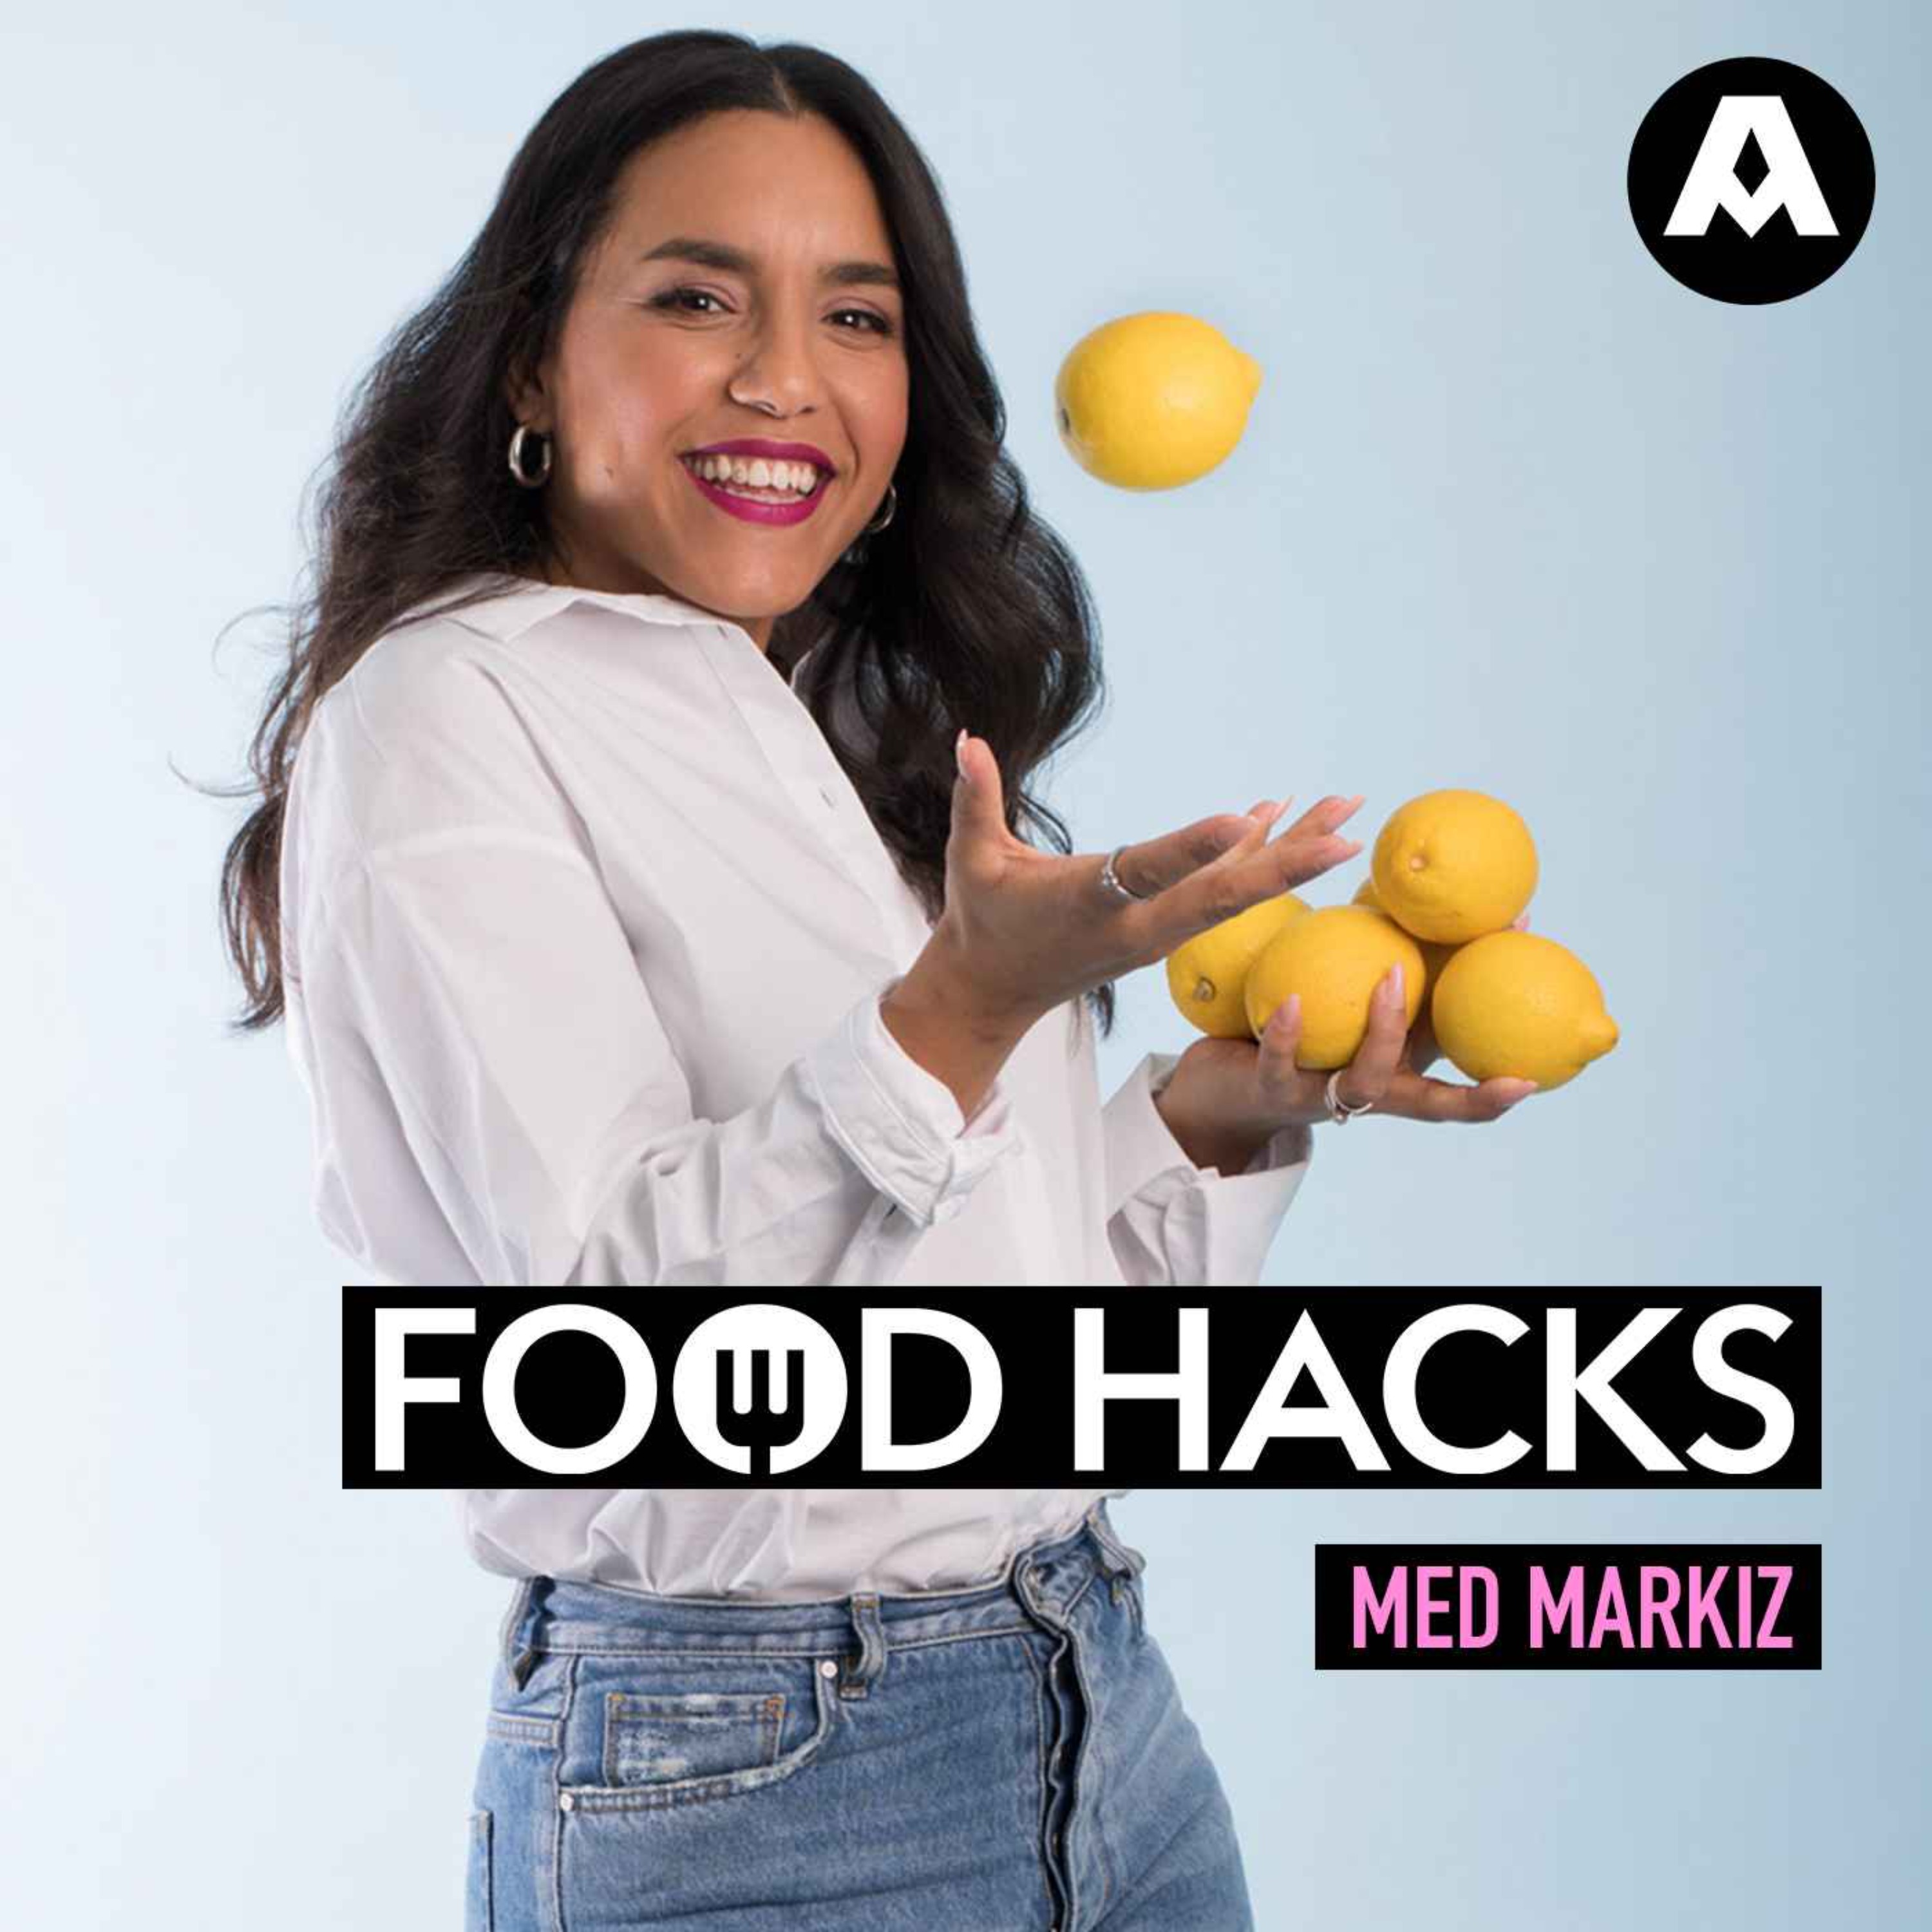 Food hacks: Havreriset